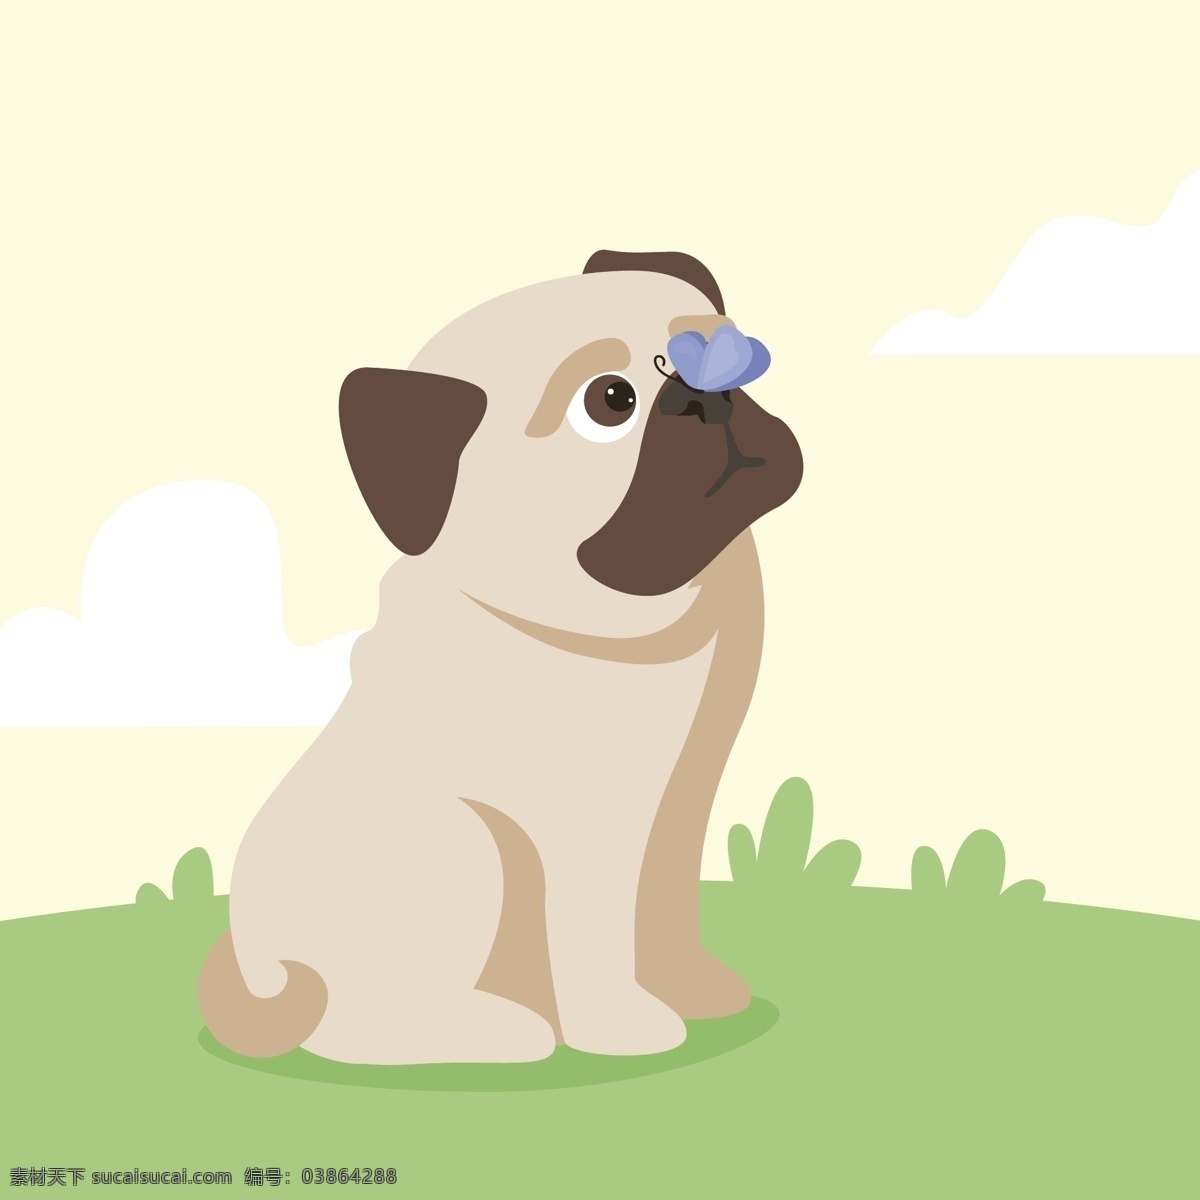 表情 动物 狗 蝴蝶 卡通 可爱 可爱宠物 手绘 语言 扁平